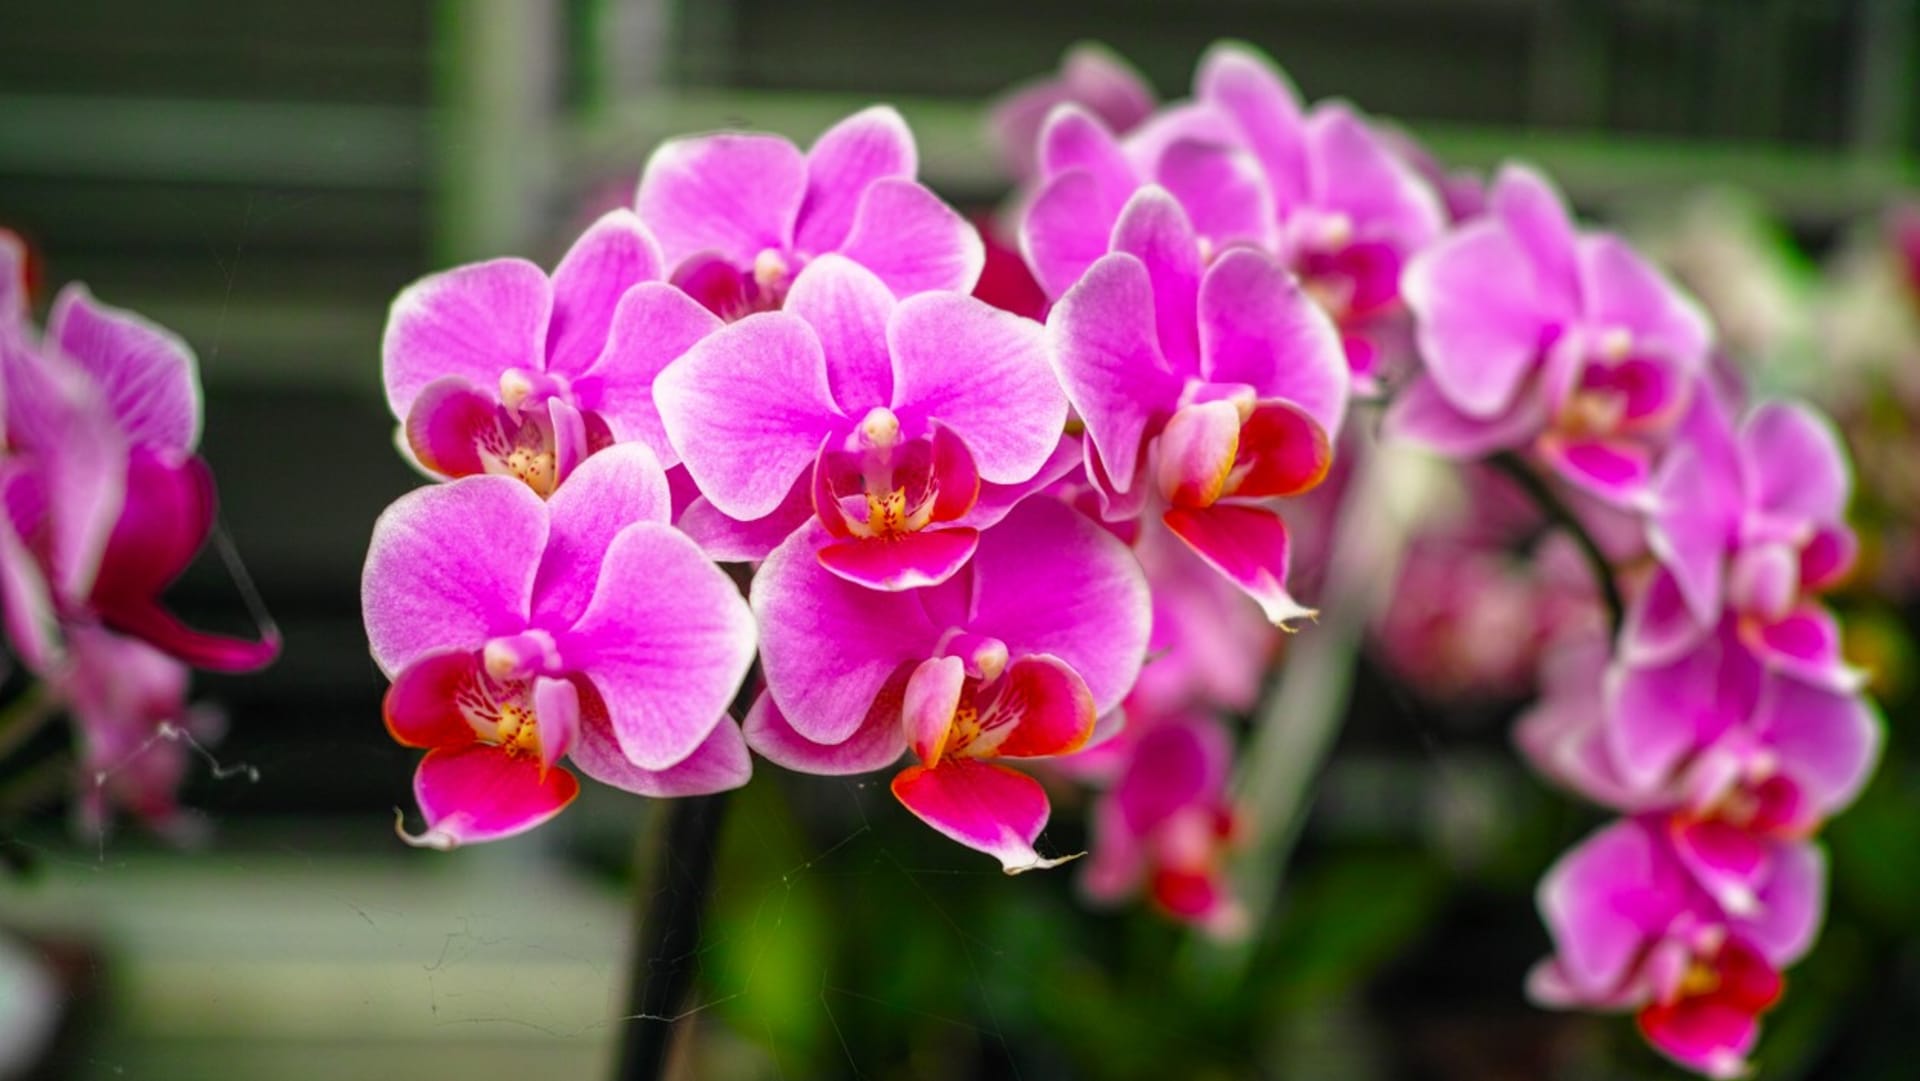 Atraktivní orchidej rodu Phalaenopsis  (česky můrovec) patří k nejodolnějším a nejméně náročným druhům orchidejí. Je ideální pro začínající pěstitele, kvete bohatě celý rok a při správné péči vydrží léta.